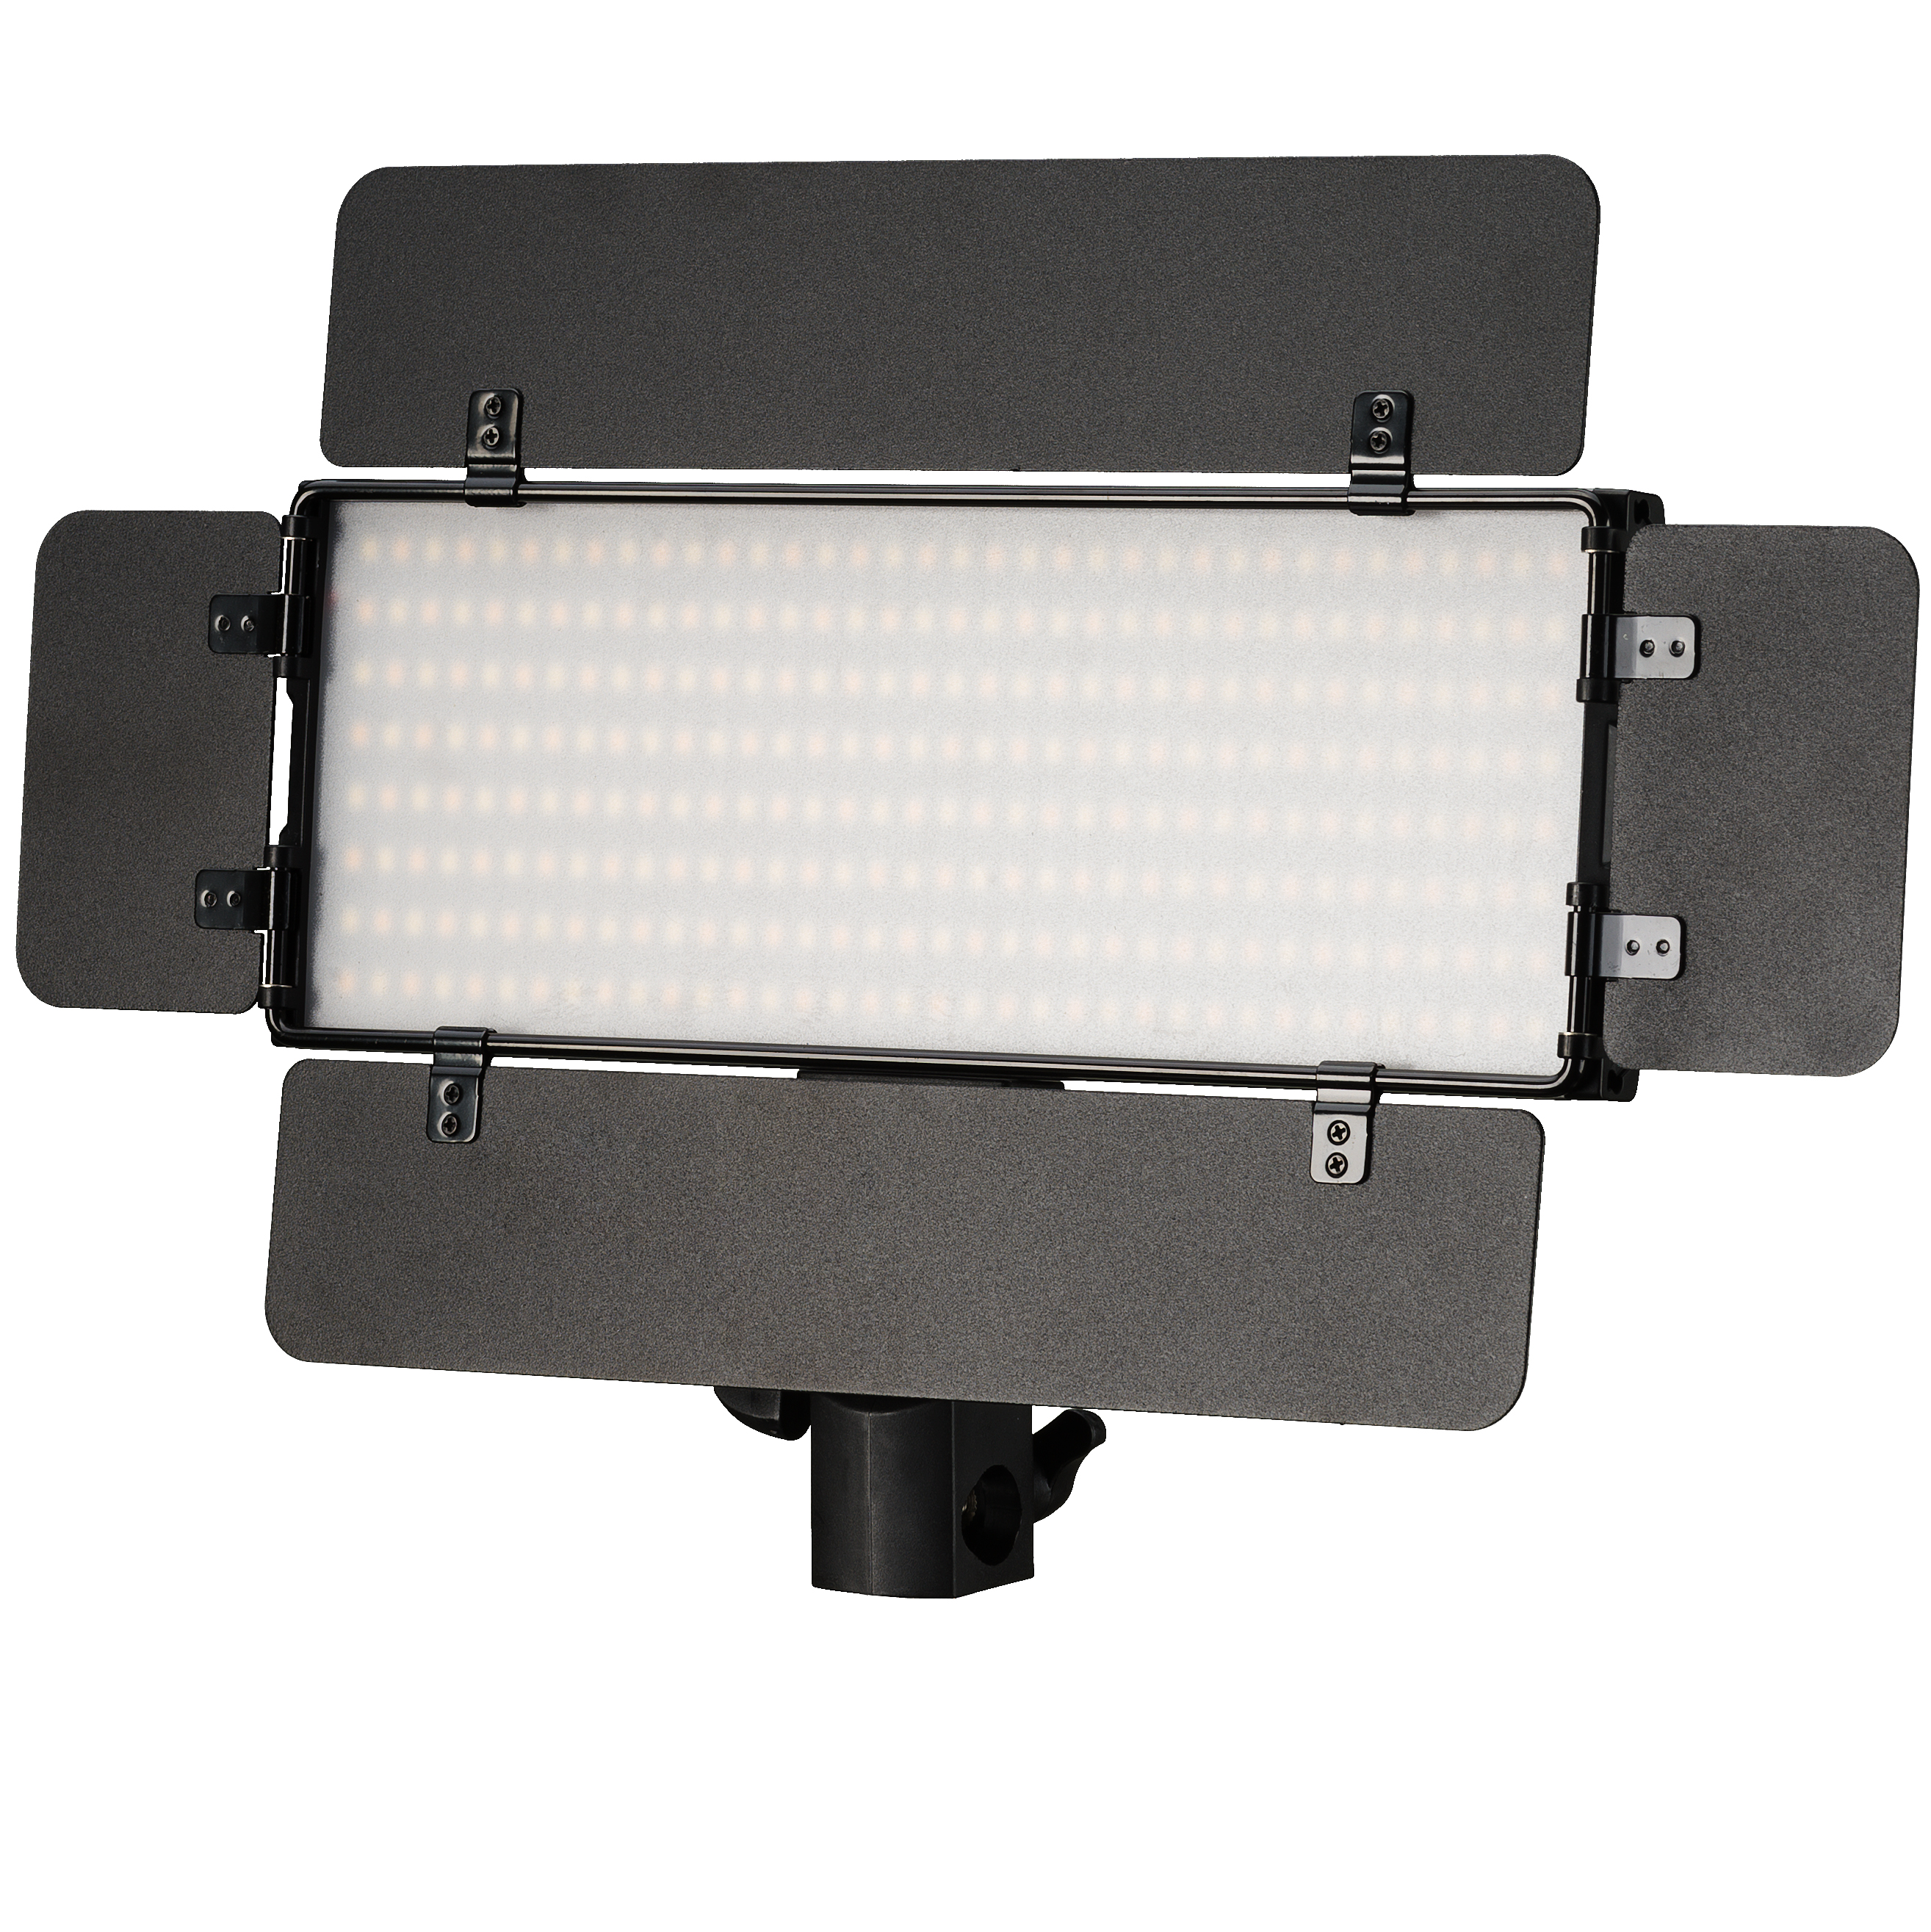 Set di pannelli luminosi bi-colore a LED BRESSER PT 30B-II con alette frangiluce, batterie, alimentatore, telecomando e custodia